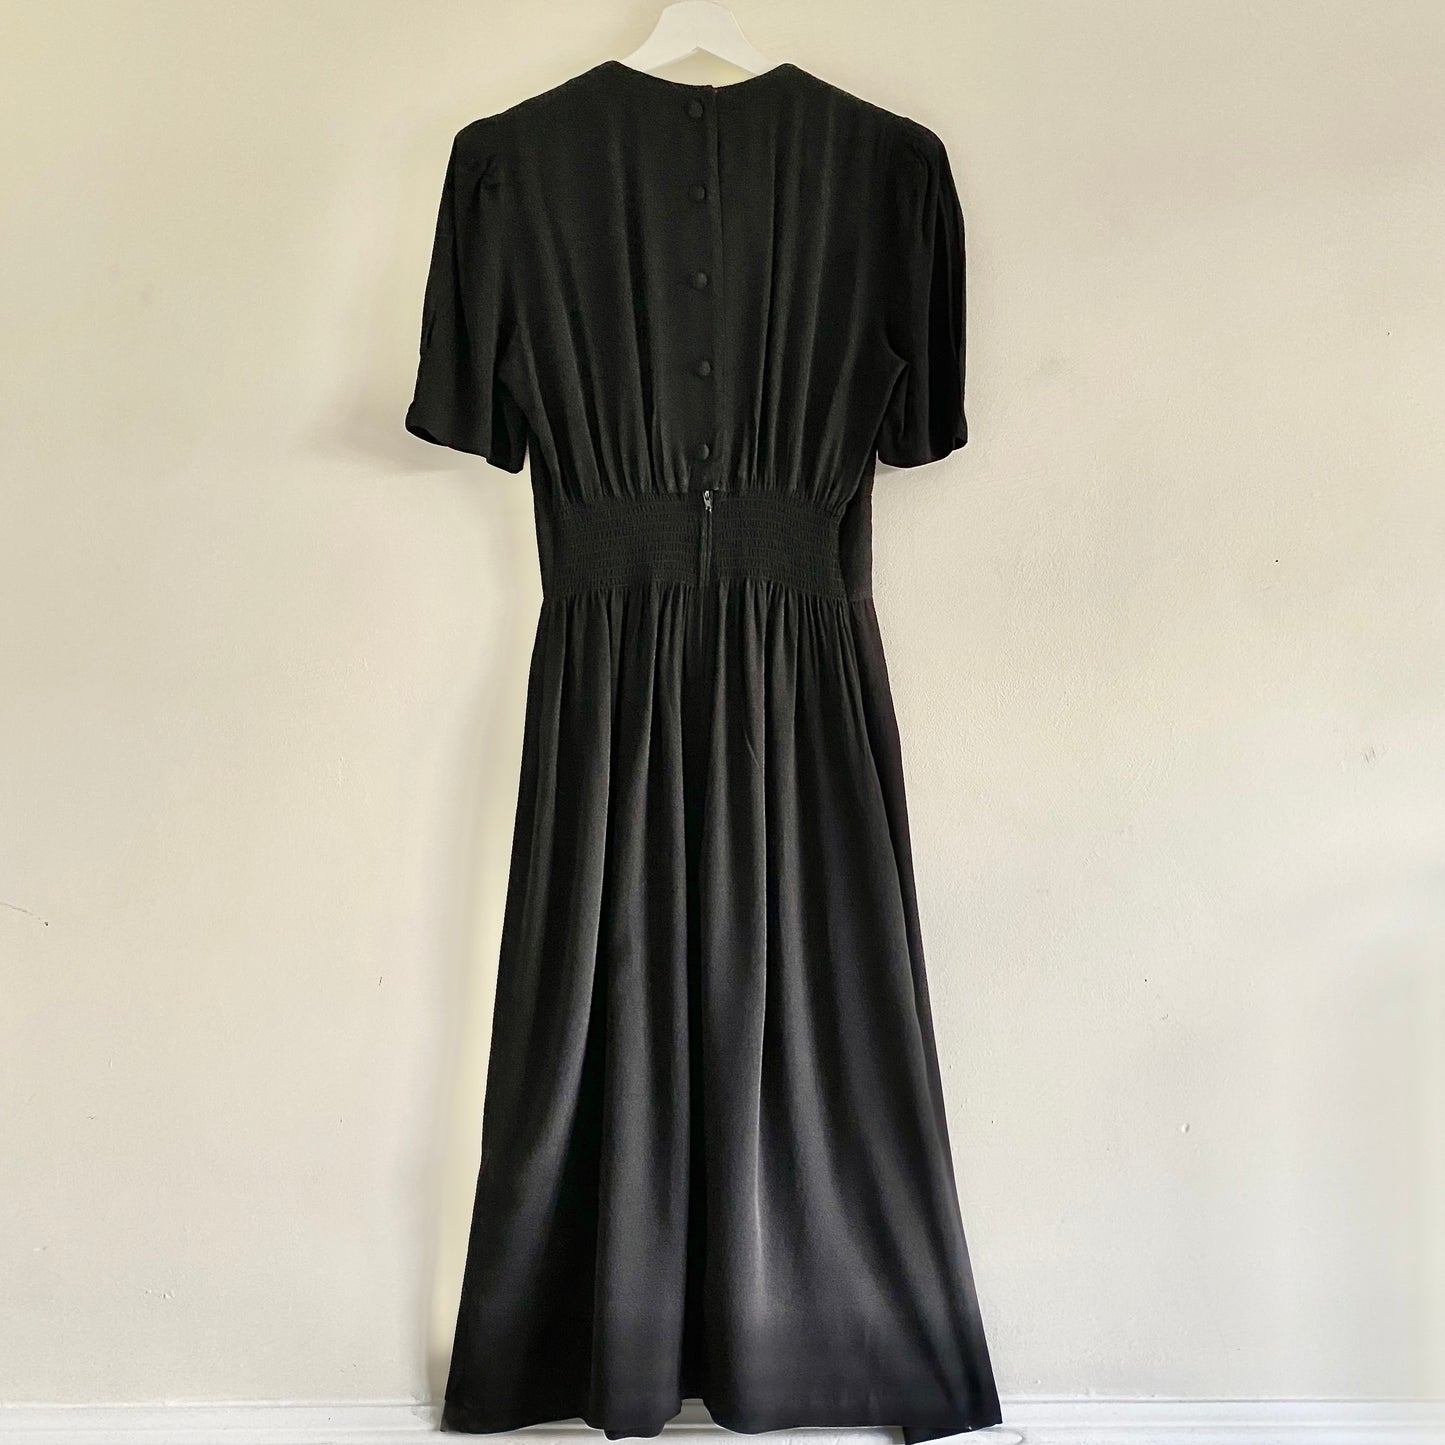 Black Midi Dress was £35